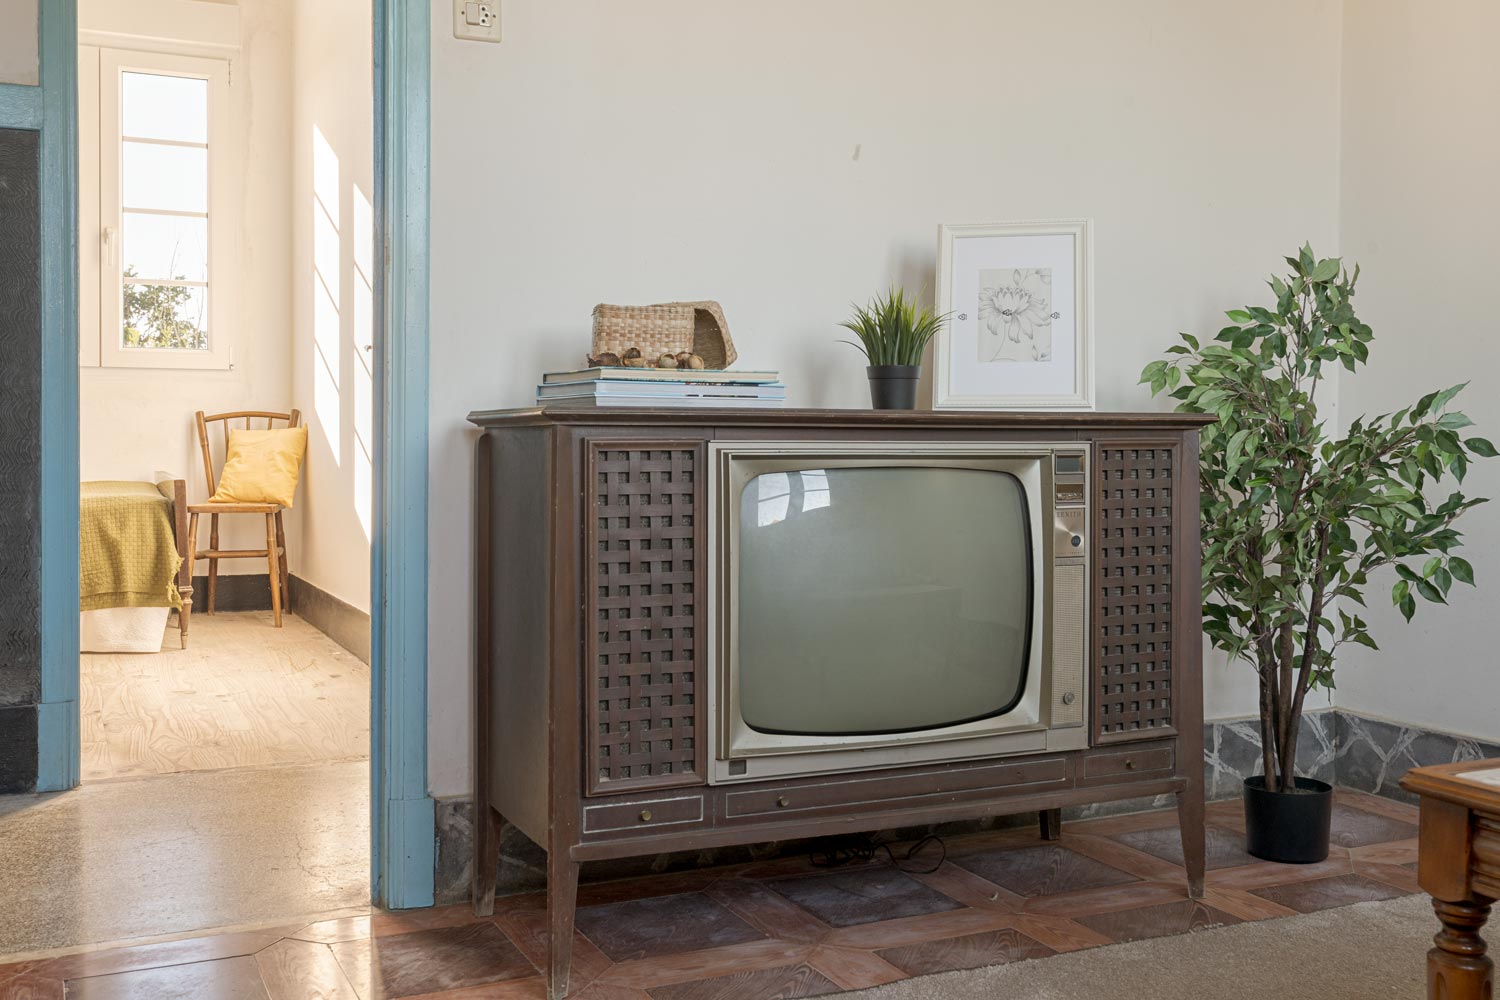 Sala de estar retro con televisión antigua, decoración minimalista y plantas de interior, reflejando una mezcla de historia y simplicidad en una casa de Bergondo, A Coruña."